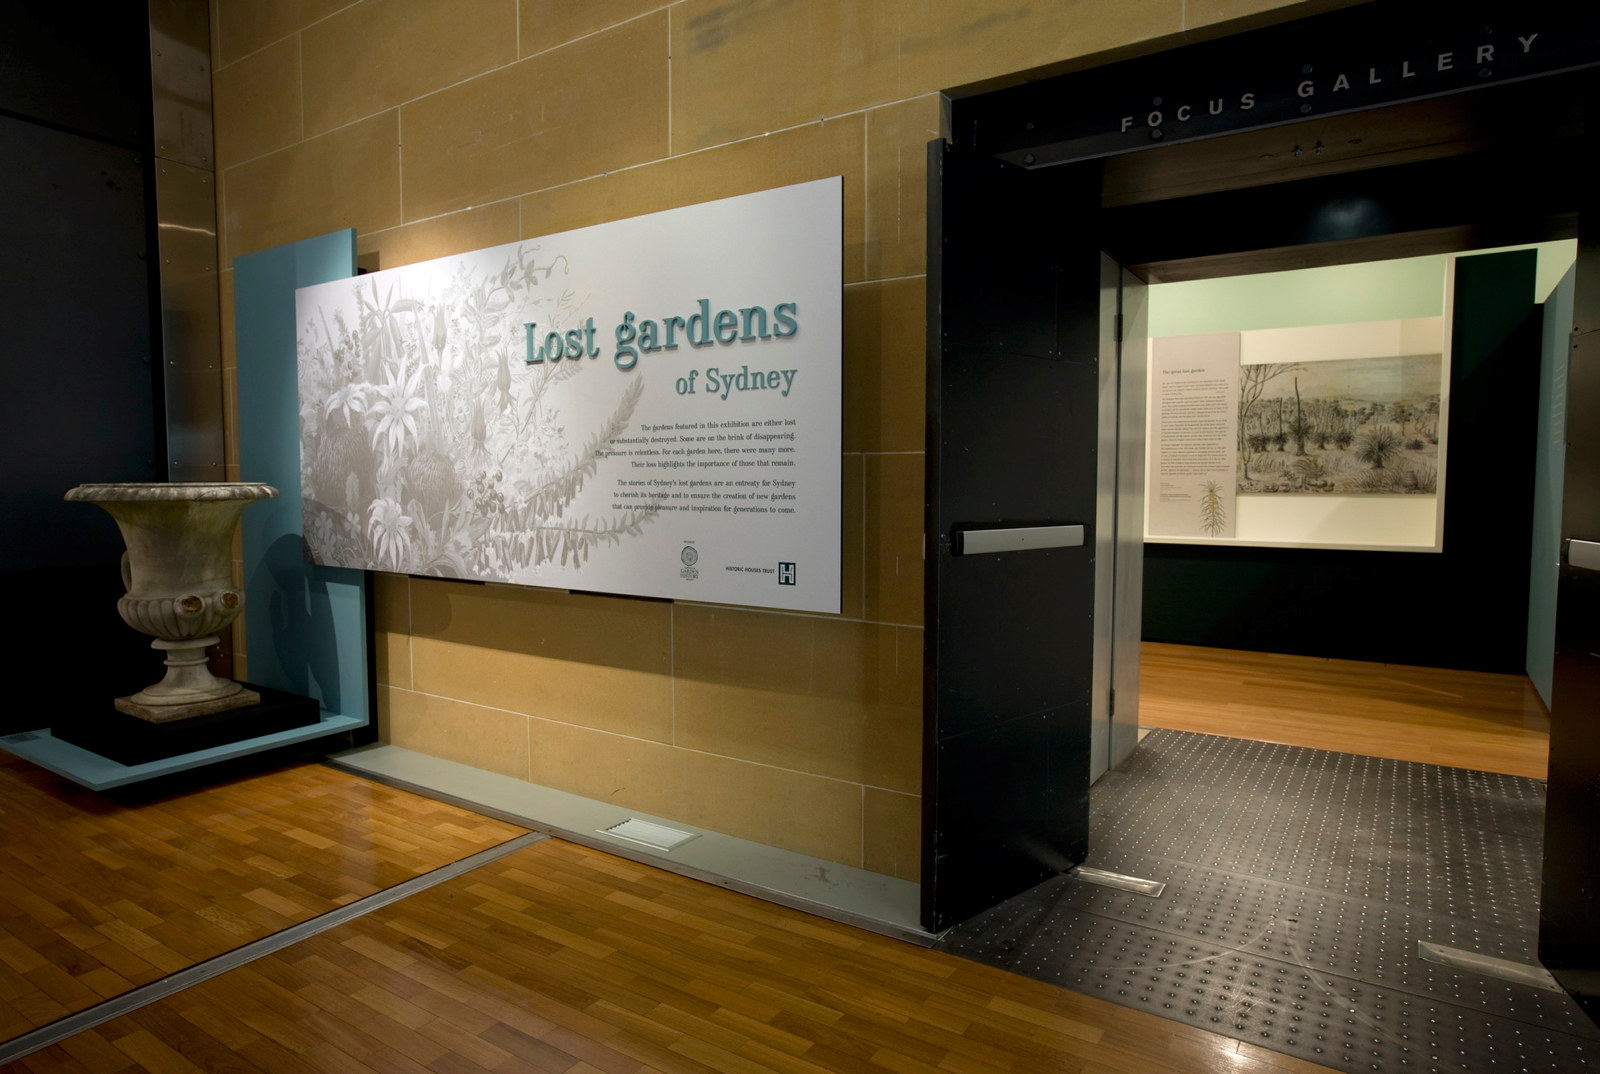 Lost gardens of Sydney exhibition installation view